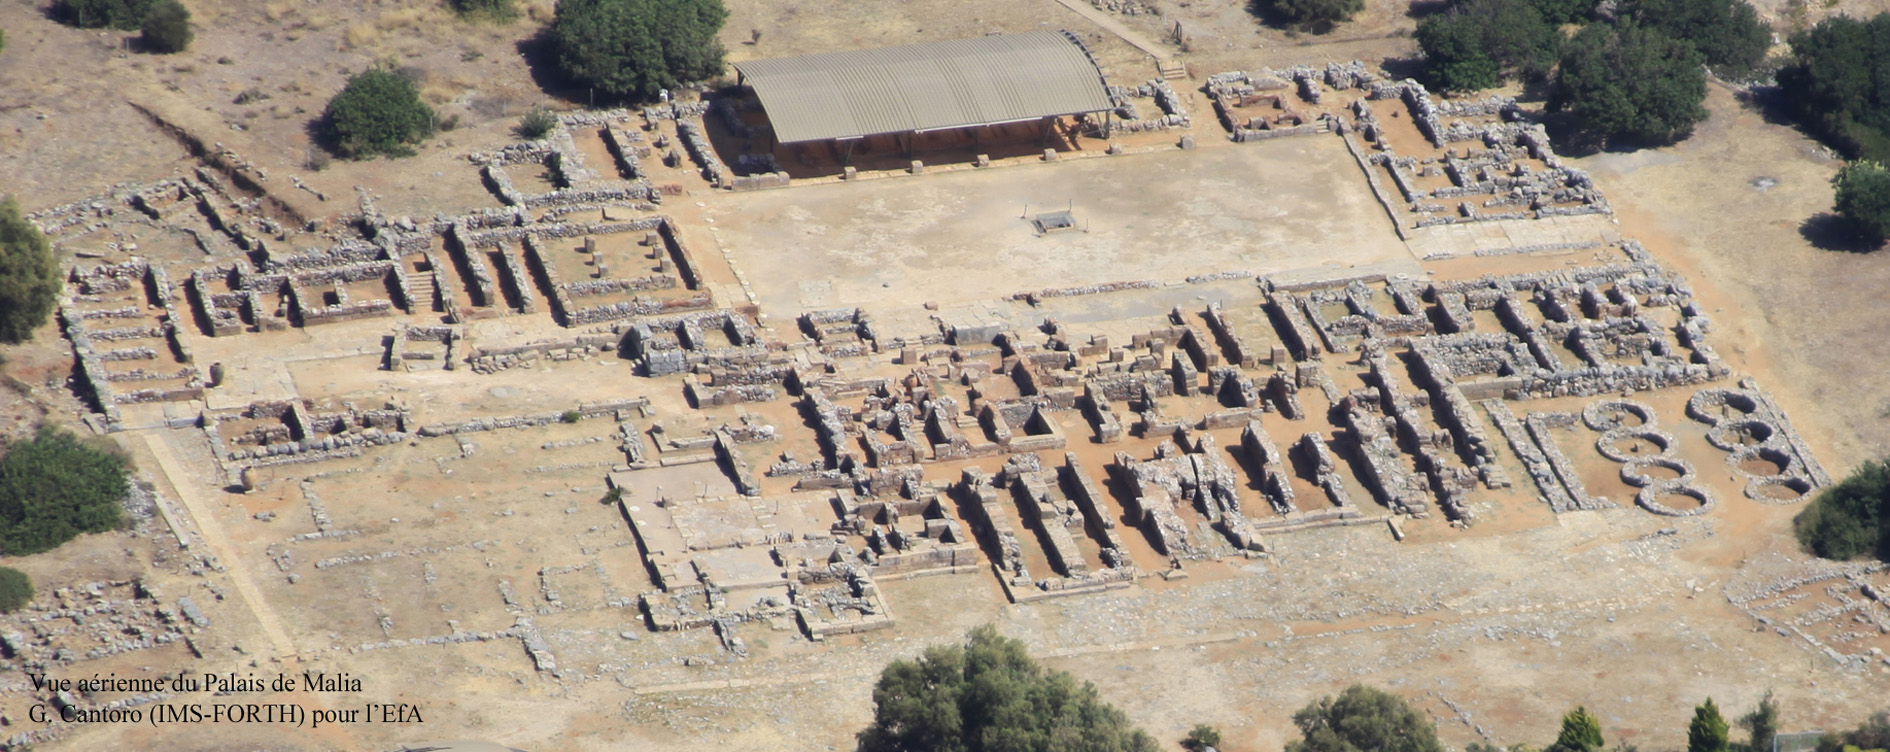 Figure 2. Vue aérienne du Palais de Malia, depuis le Nord-Ouest. Cliché G. Cantoro (IMS-FORTH) ©EFA